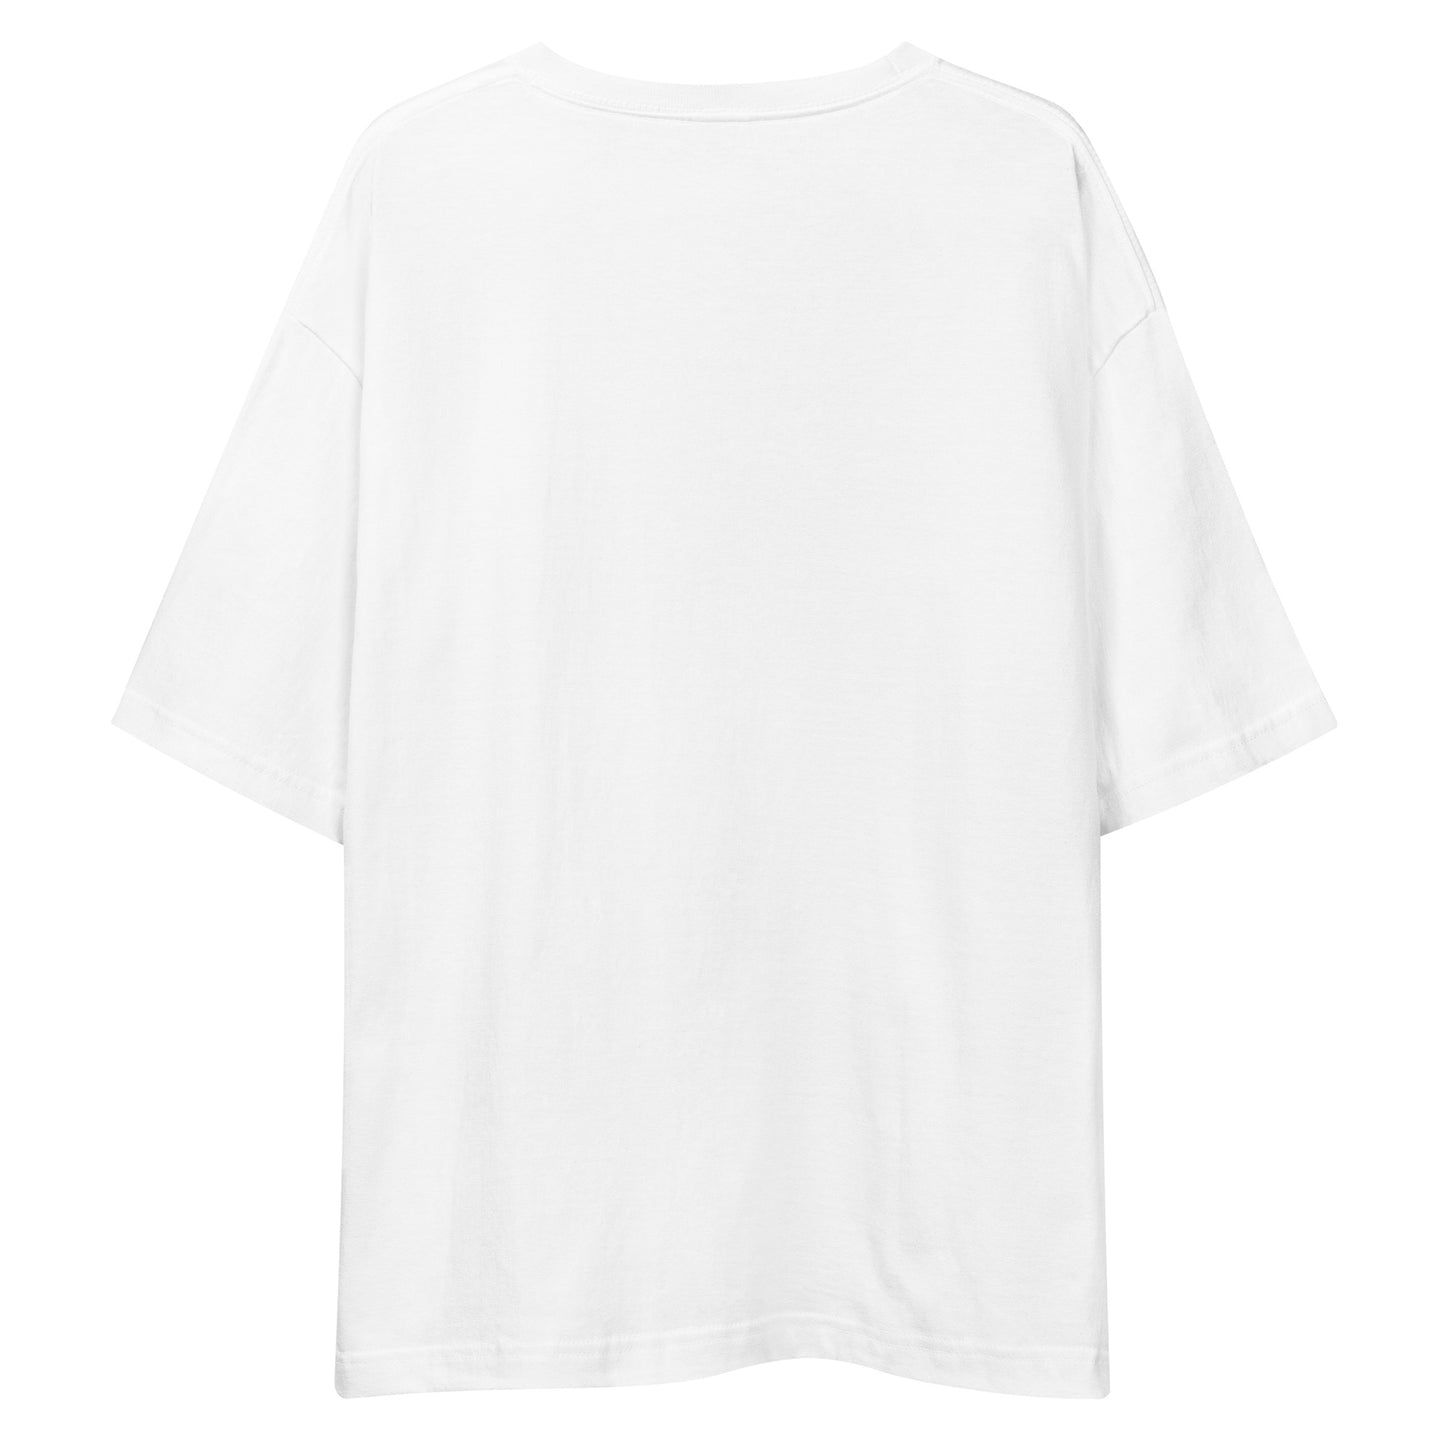 E226 - Tシャツ/ビッグシルエット(ユニバーサルジャンプ/女子 : ホワイト/ブラック)